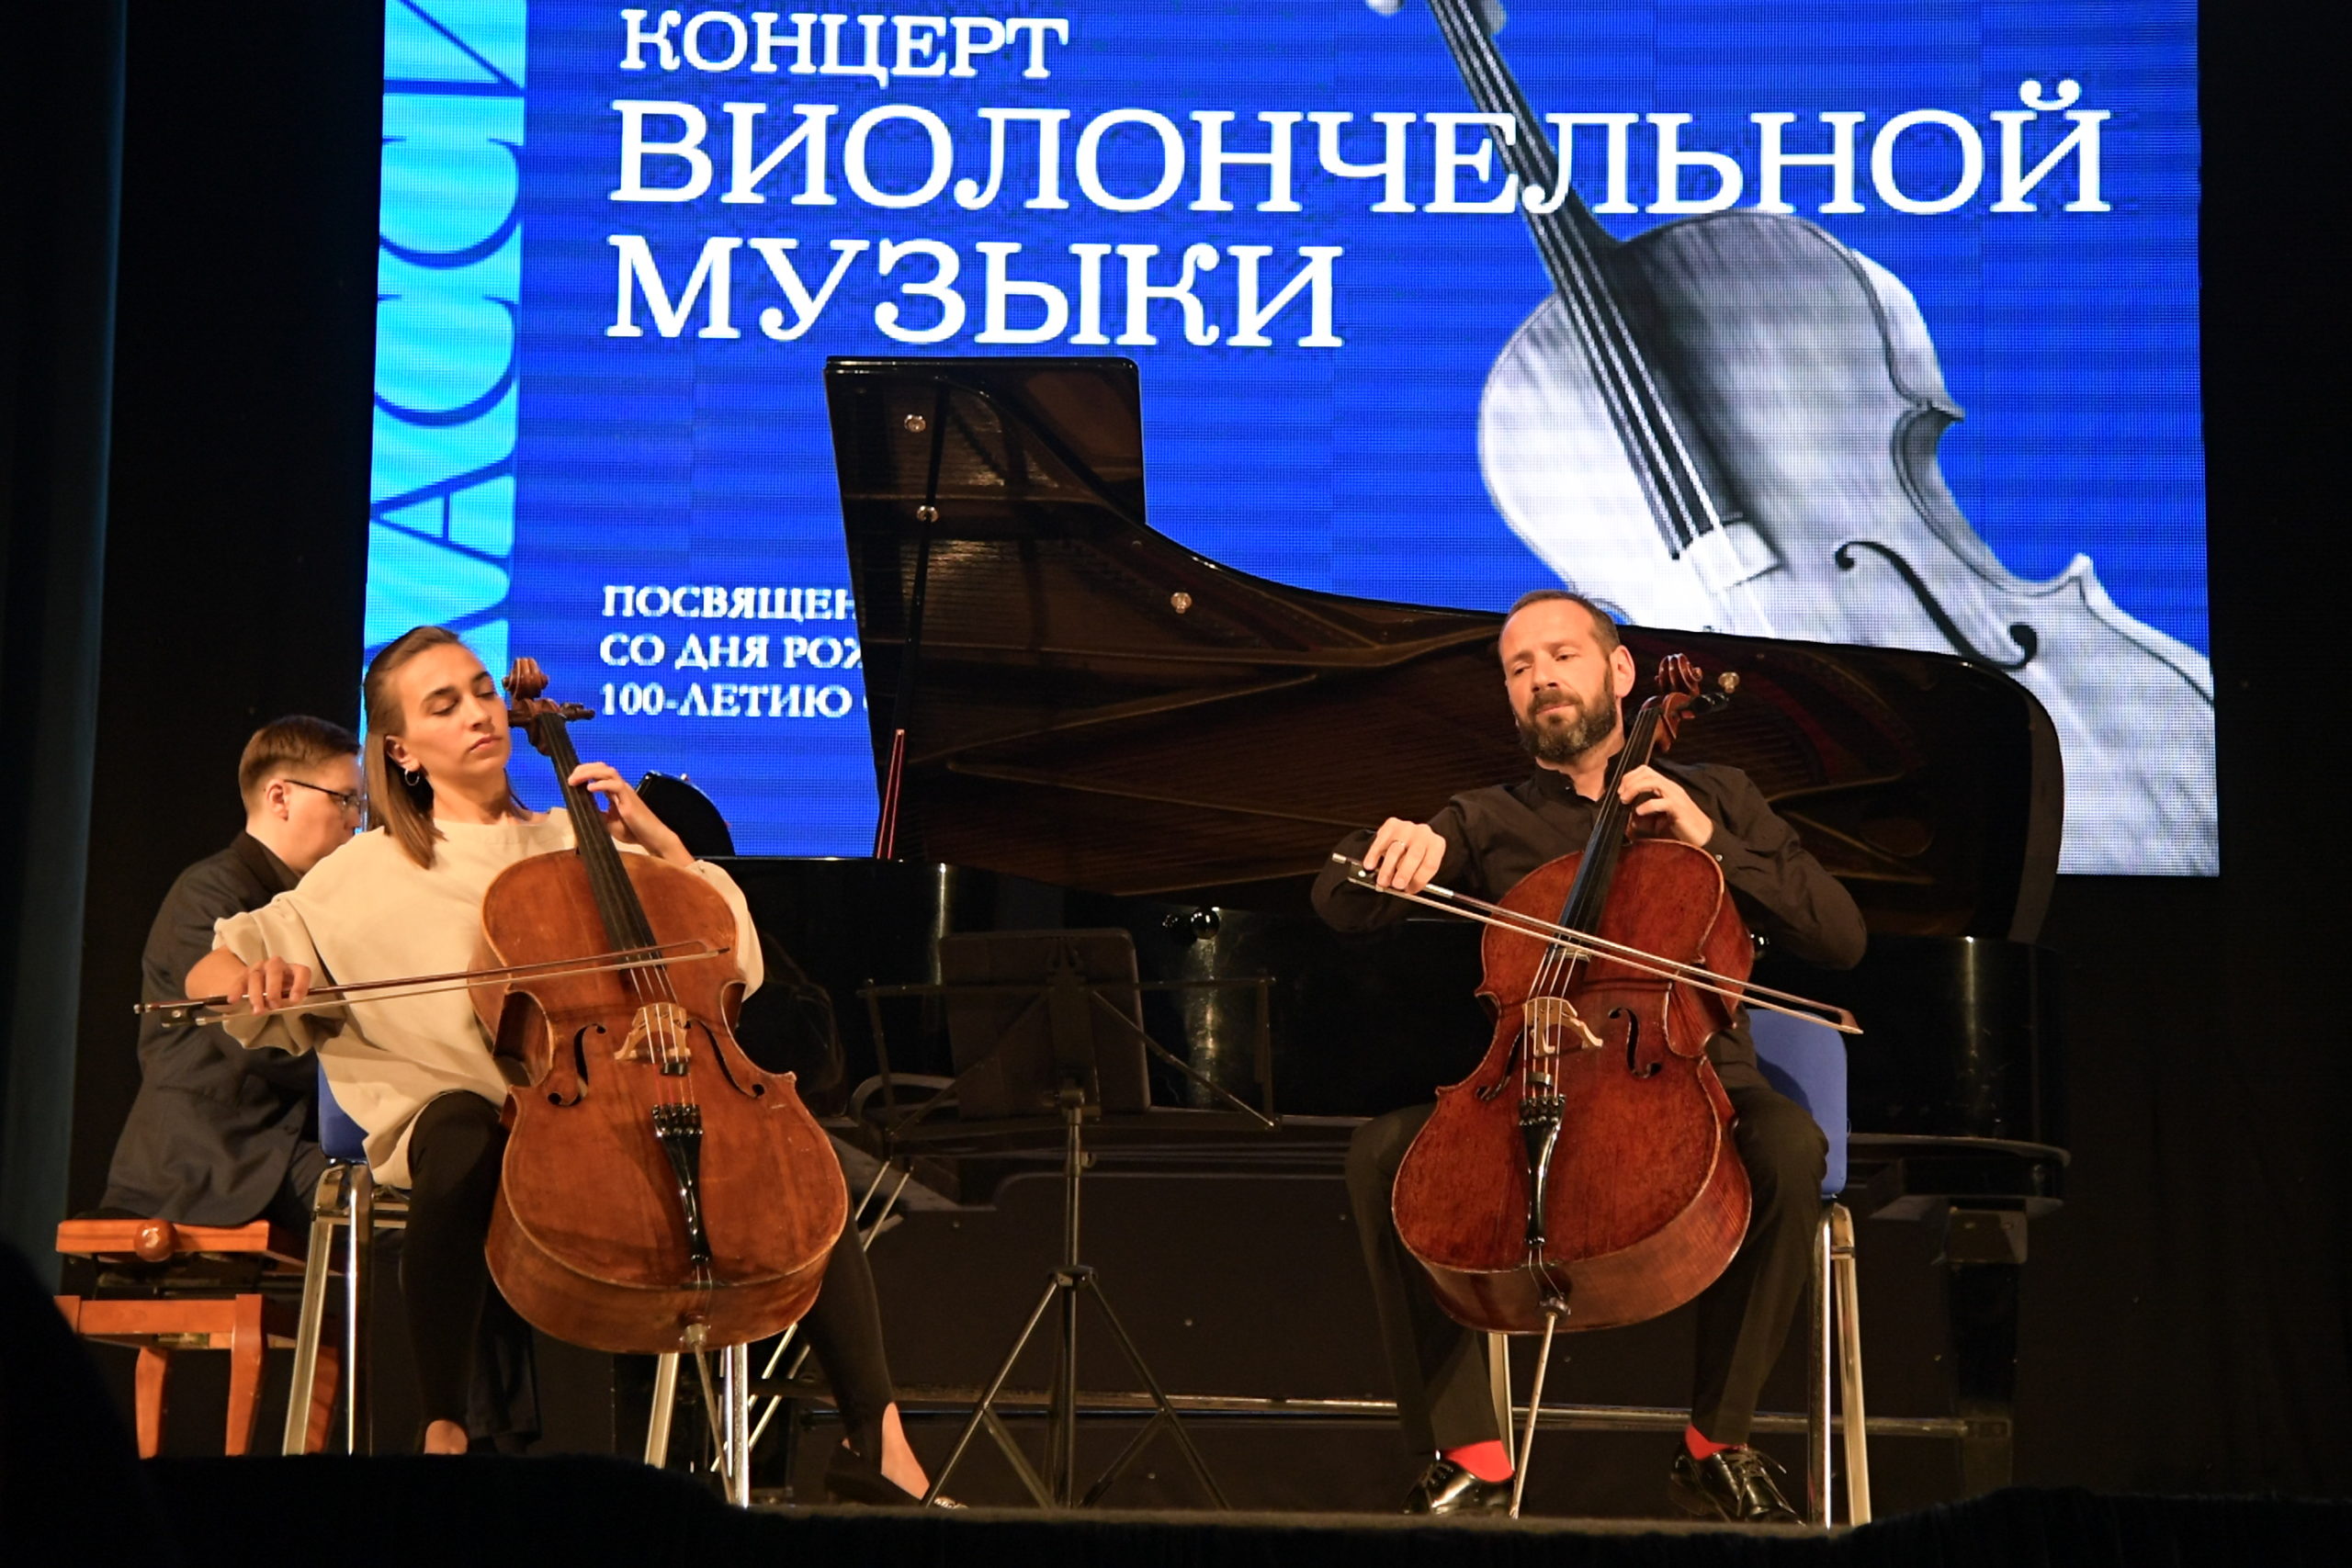 Концерт виолончельной музыки, посвященный 150-летию со дня рождения Сергея Рахманинова и 100-летию со дня рождения Даниила Шафрана